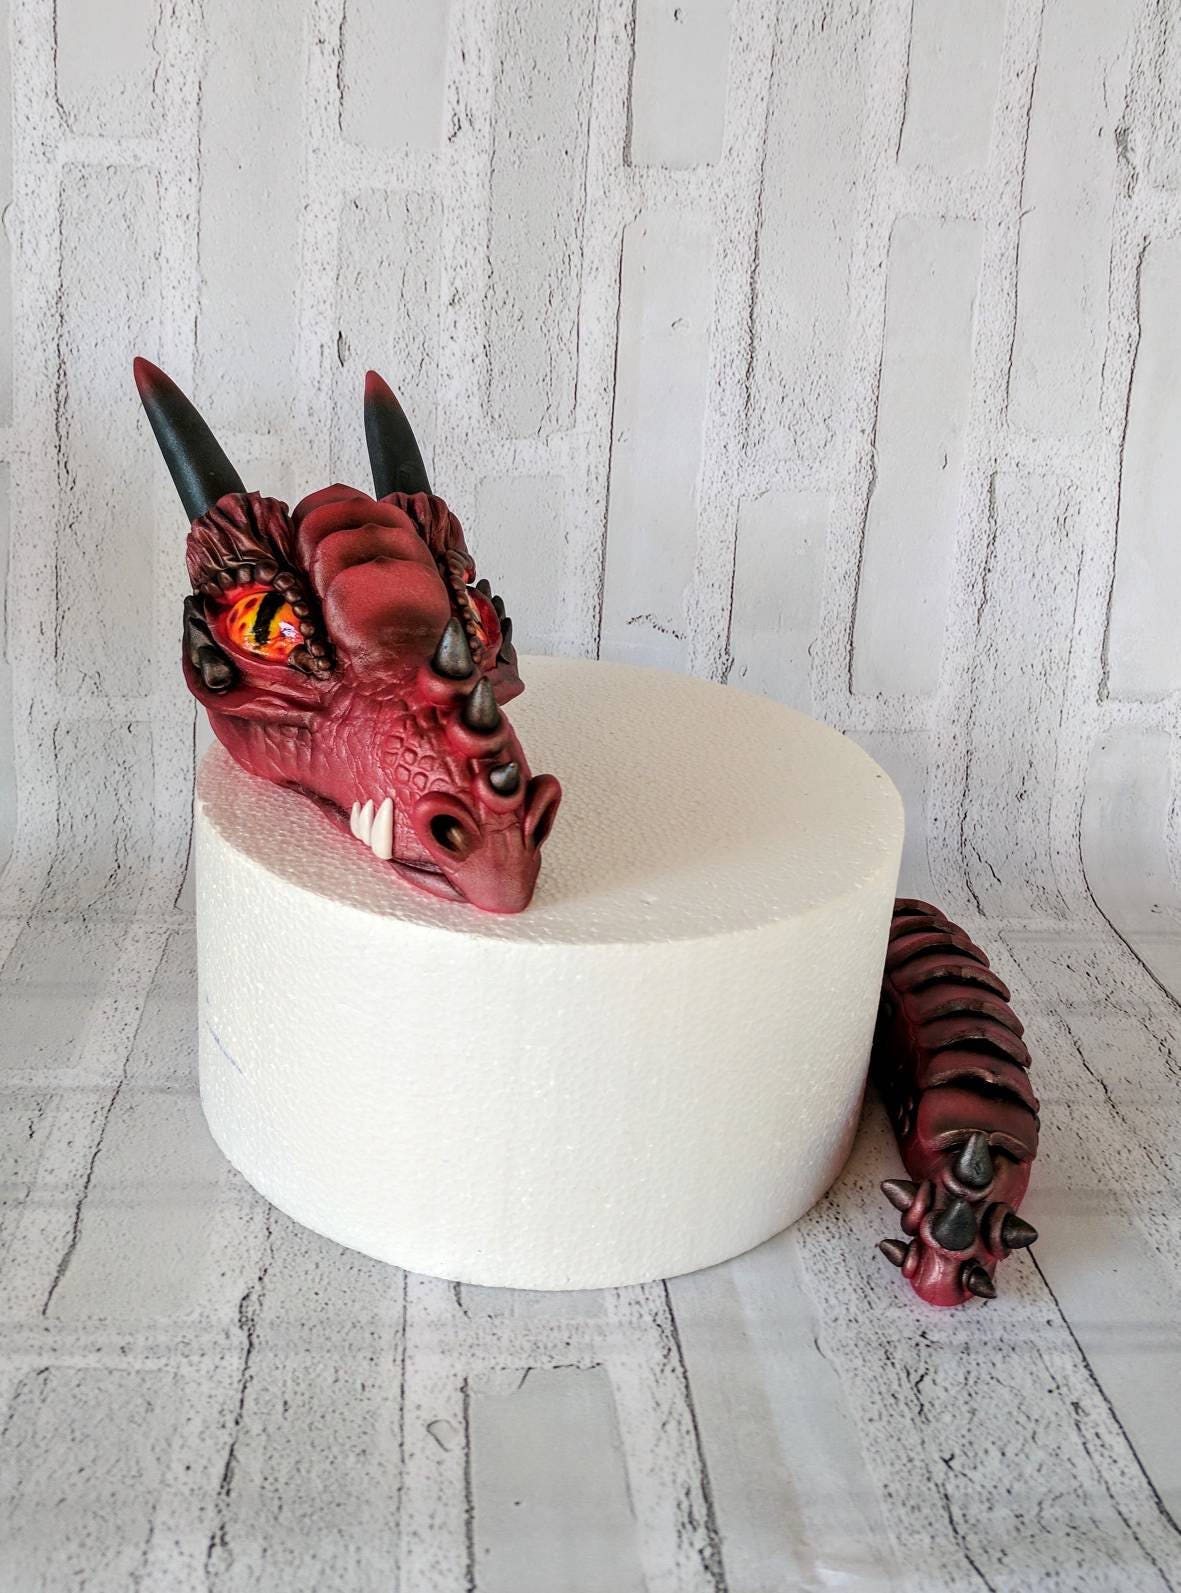 Awesome Dragon Cake Pan